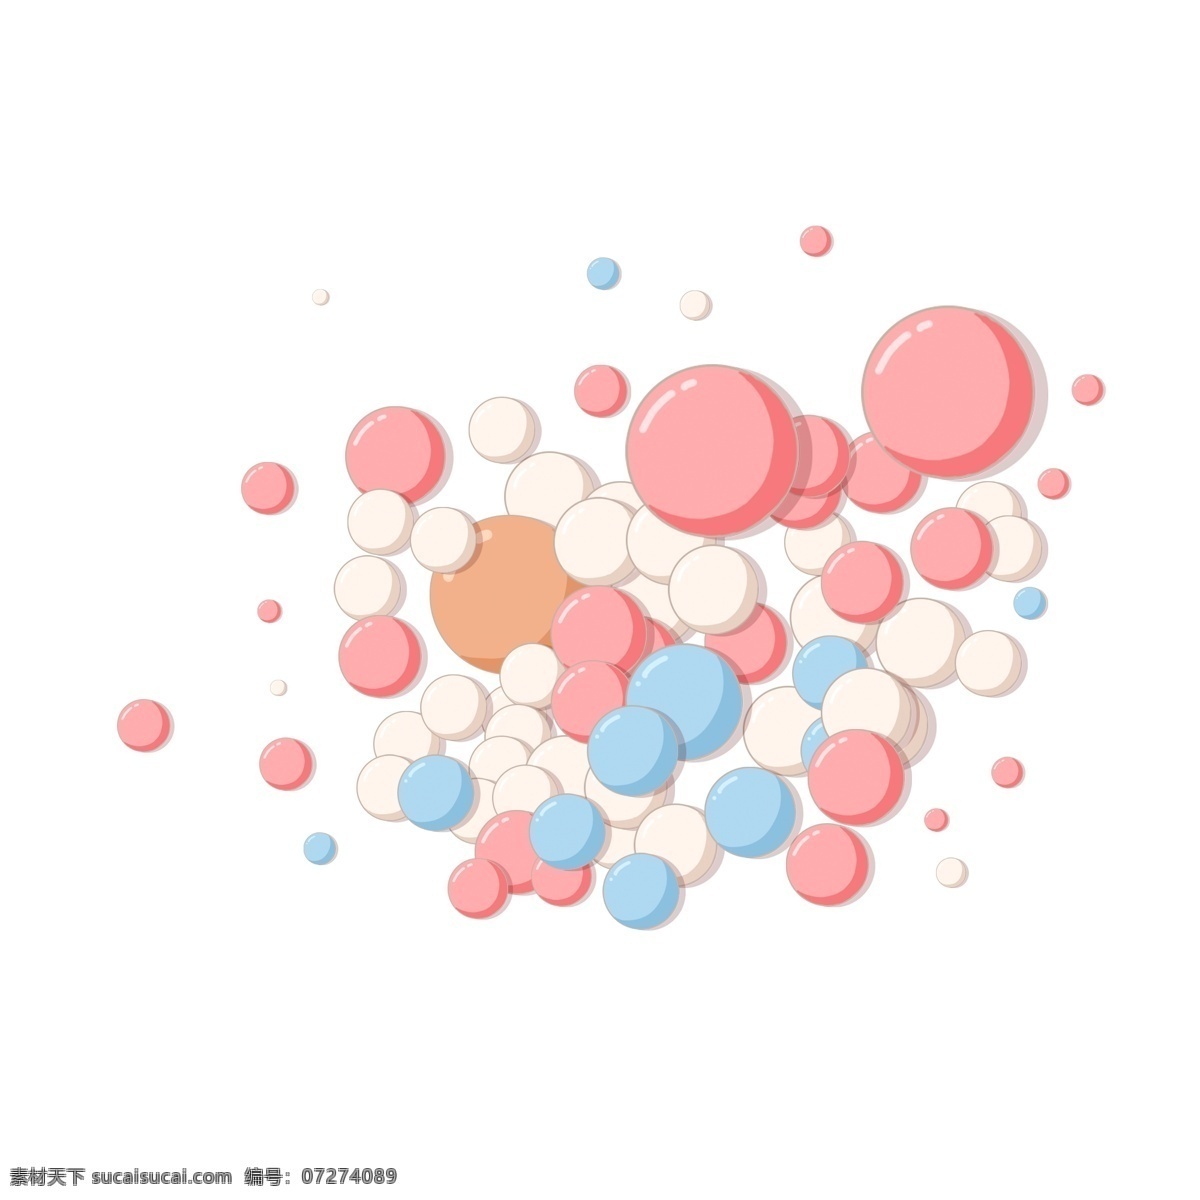 卡通 彩色 点点 漂浮 背景 粉色 蓝色 白色圆点 漂浮背景 彩色的糖果 糖果 球